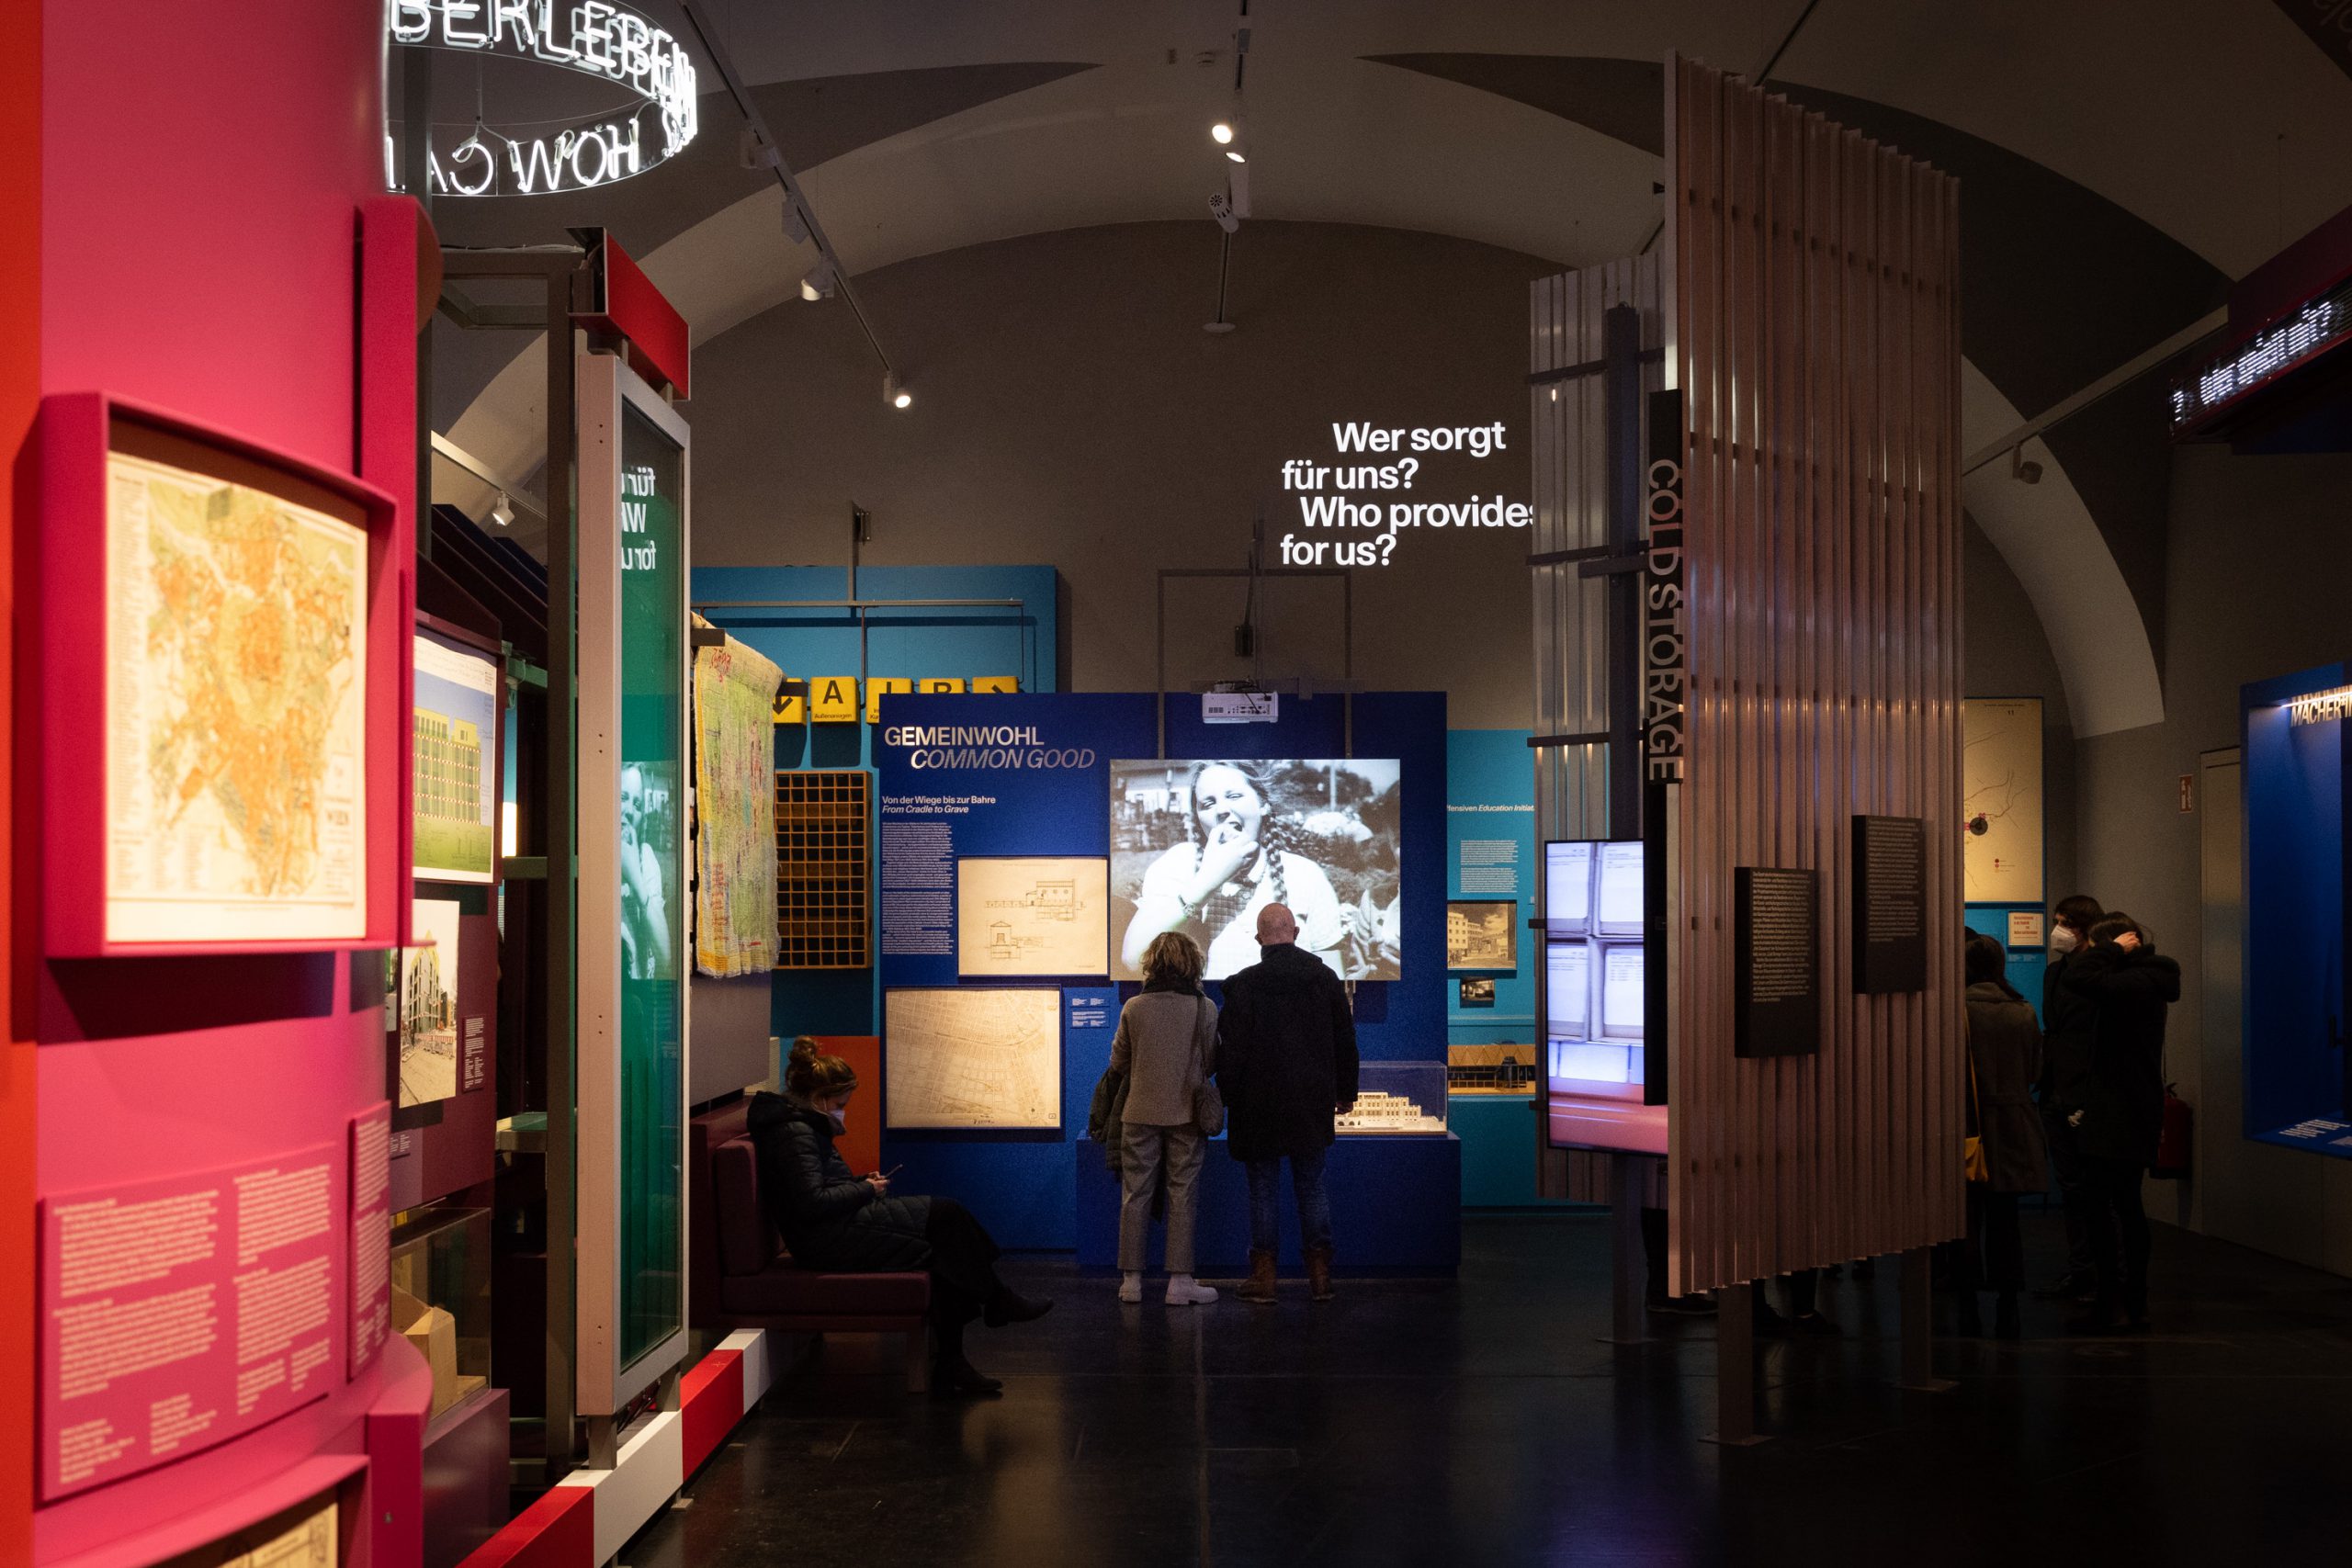 Ausstellungsraum mit bunten Installationen und 2 Personen vor einem Screen